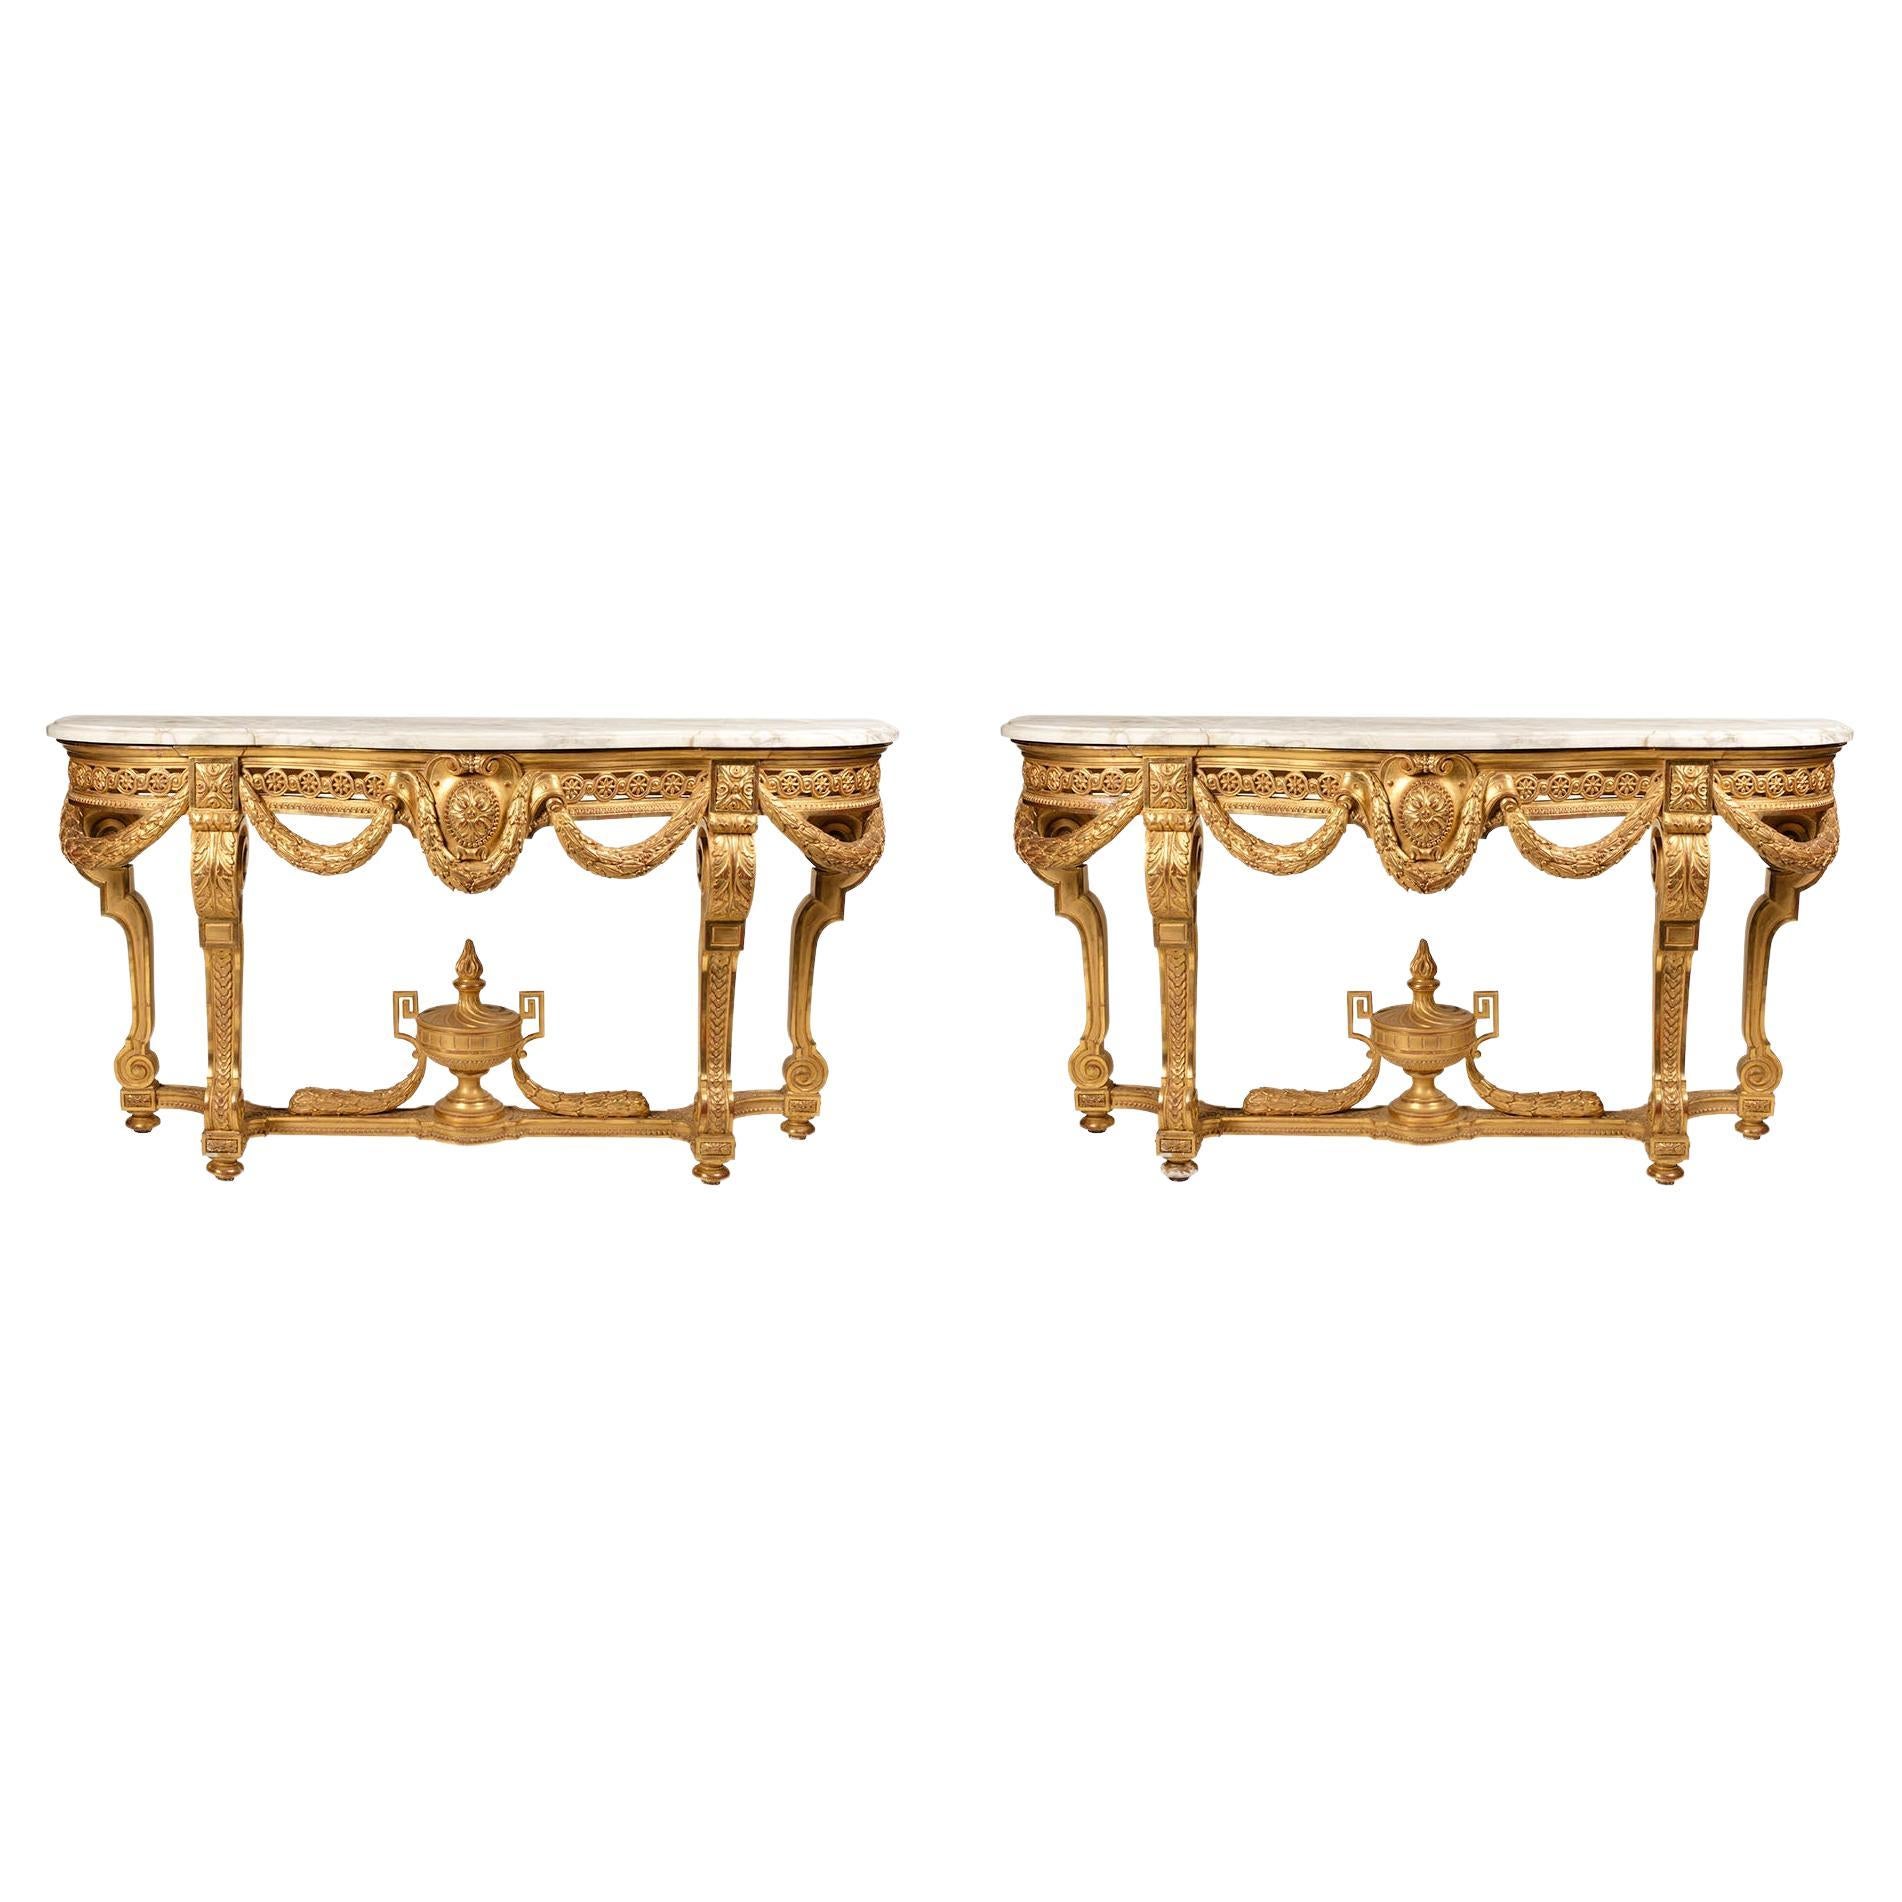 Paire de consoles fantaisistes en bois doré de style Louis XVI, dessus en marbre